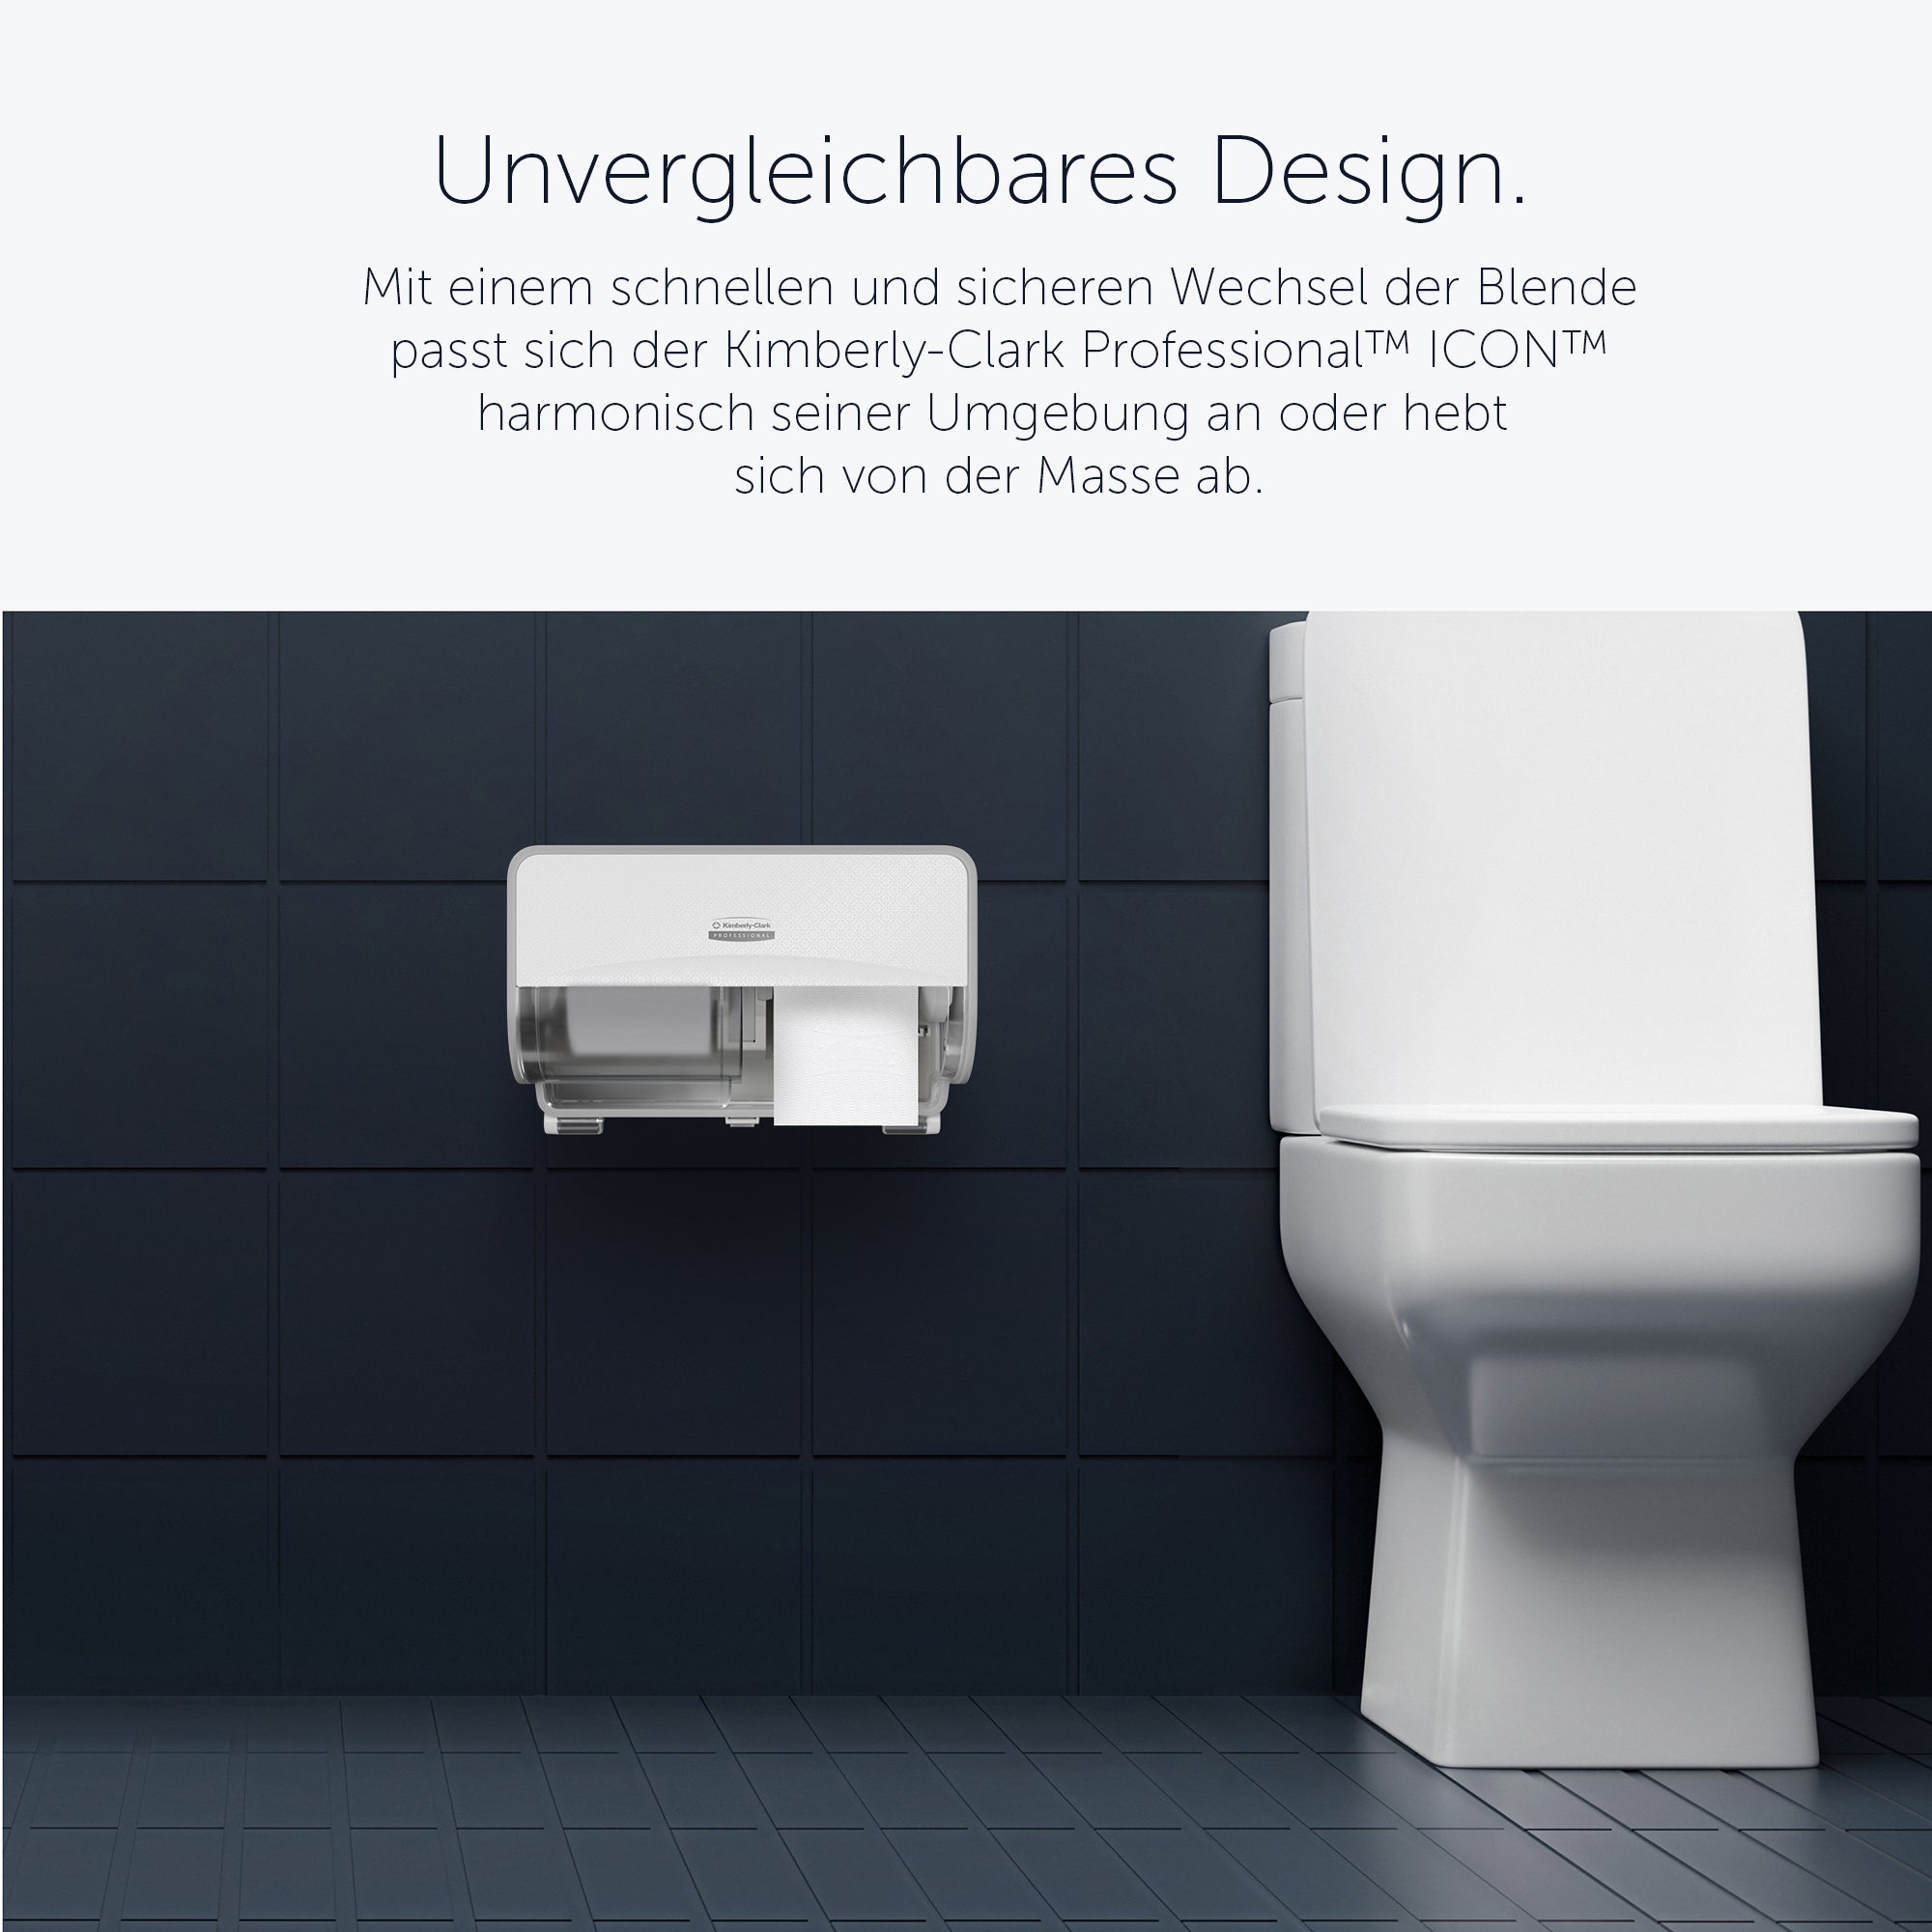 Kimberly-Clark Professional™ ICON™-Standard-Toilettenpapierspender mit 2 horizont. Rollen (53945), mit weißer Blende im Mosaikdesign; 1 Spender und Blende pro Verkaufseinheit